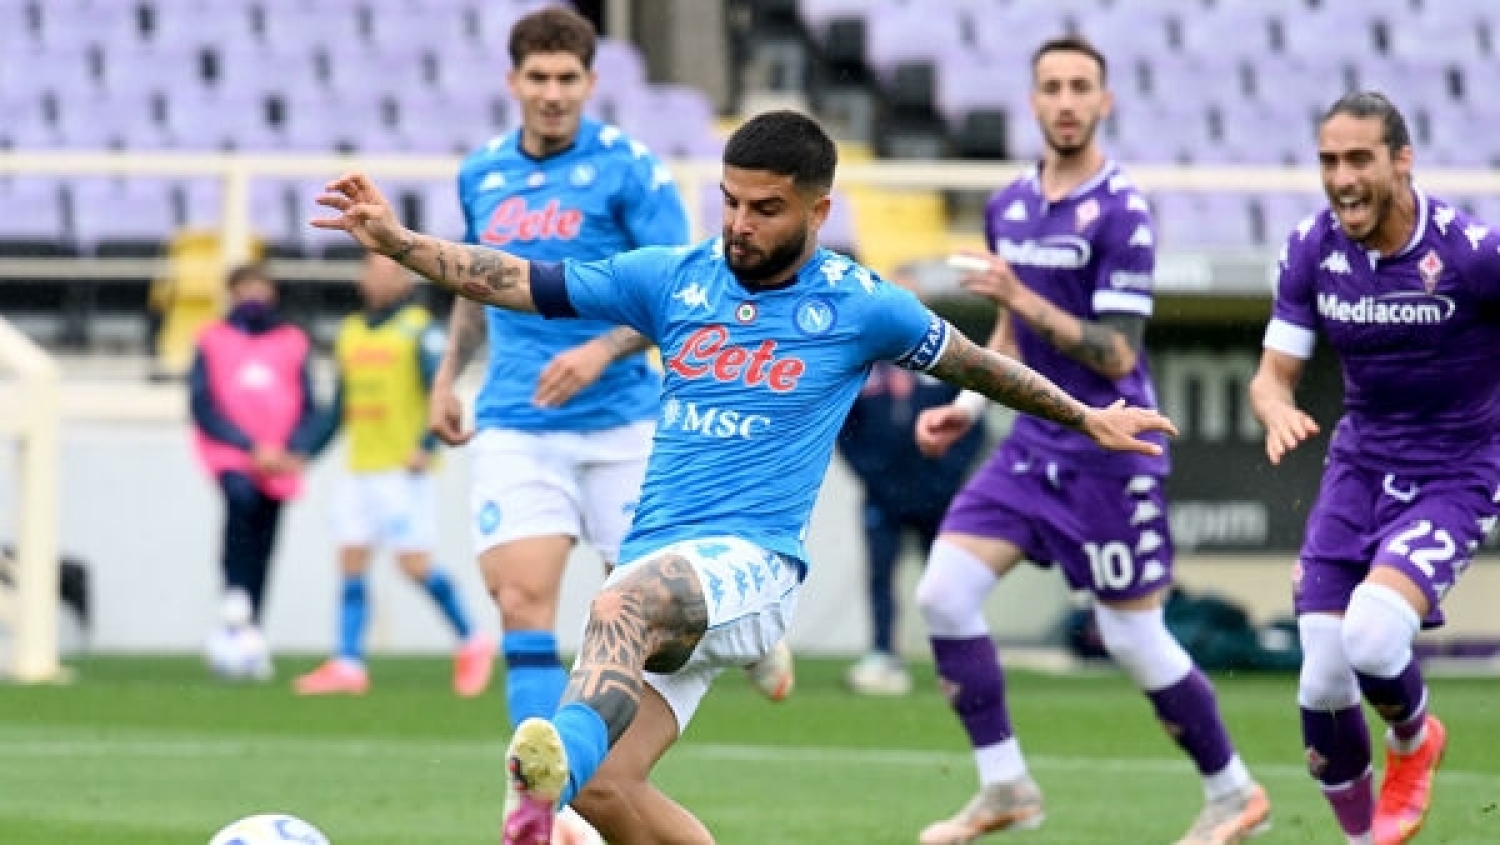 Fiorentina - Napoli, i precedenti: azzurri a caccia del 3° successo consecutivo al "Franchi"